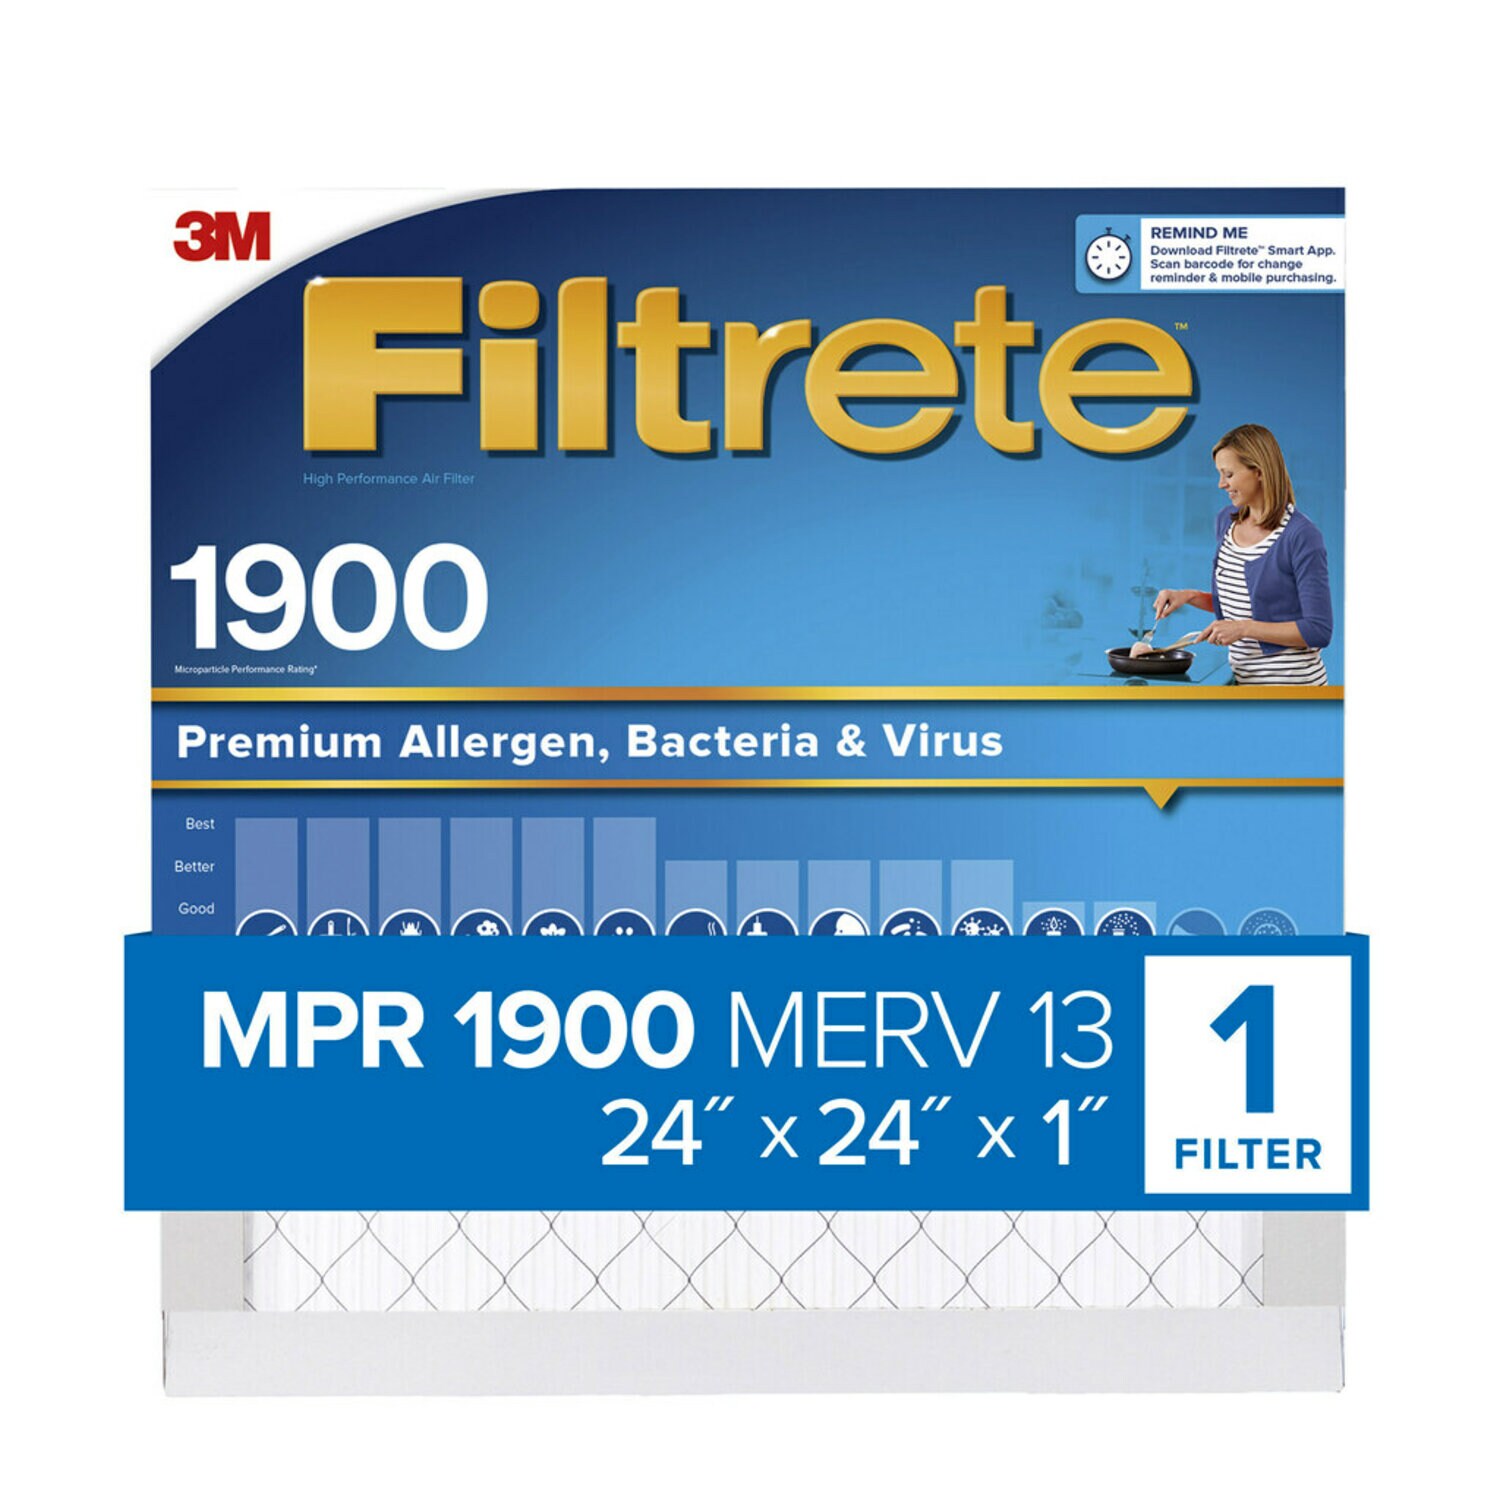 7100267966 - Filtrete High Performance Air Filter 1900 MPR UA12DC-4, 24 in x 24 in x 1 in (60.9 cm x 60.9 cm x 2.5 cm)